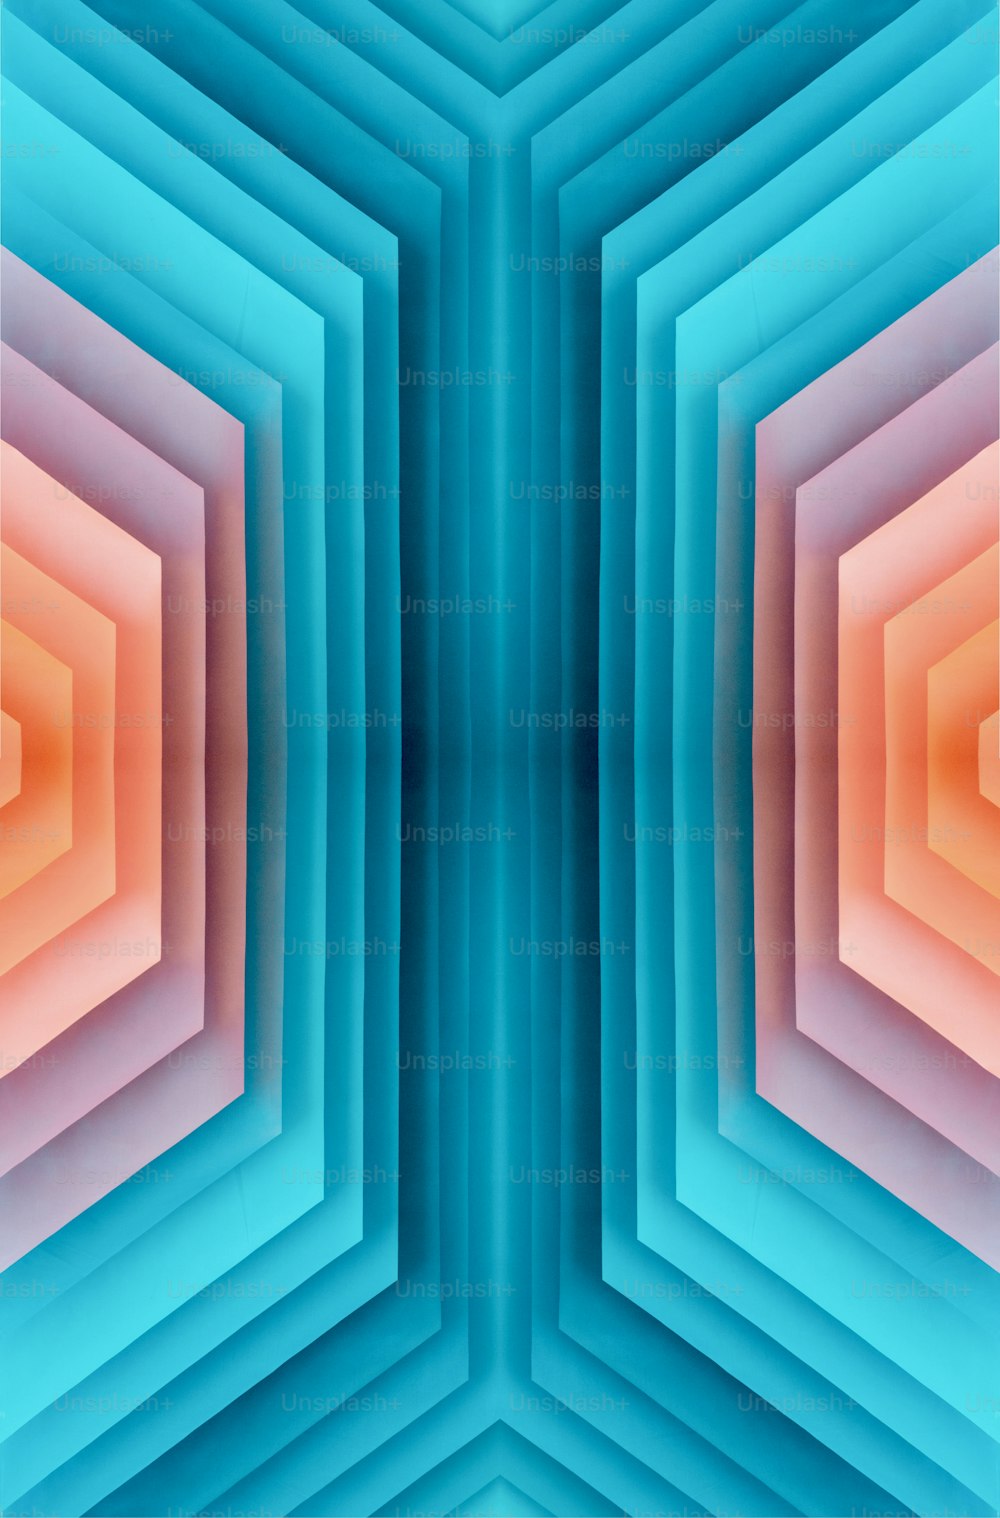 Une image abstraite d’une structure hexagonale bleue et orange